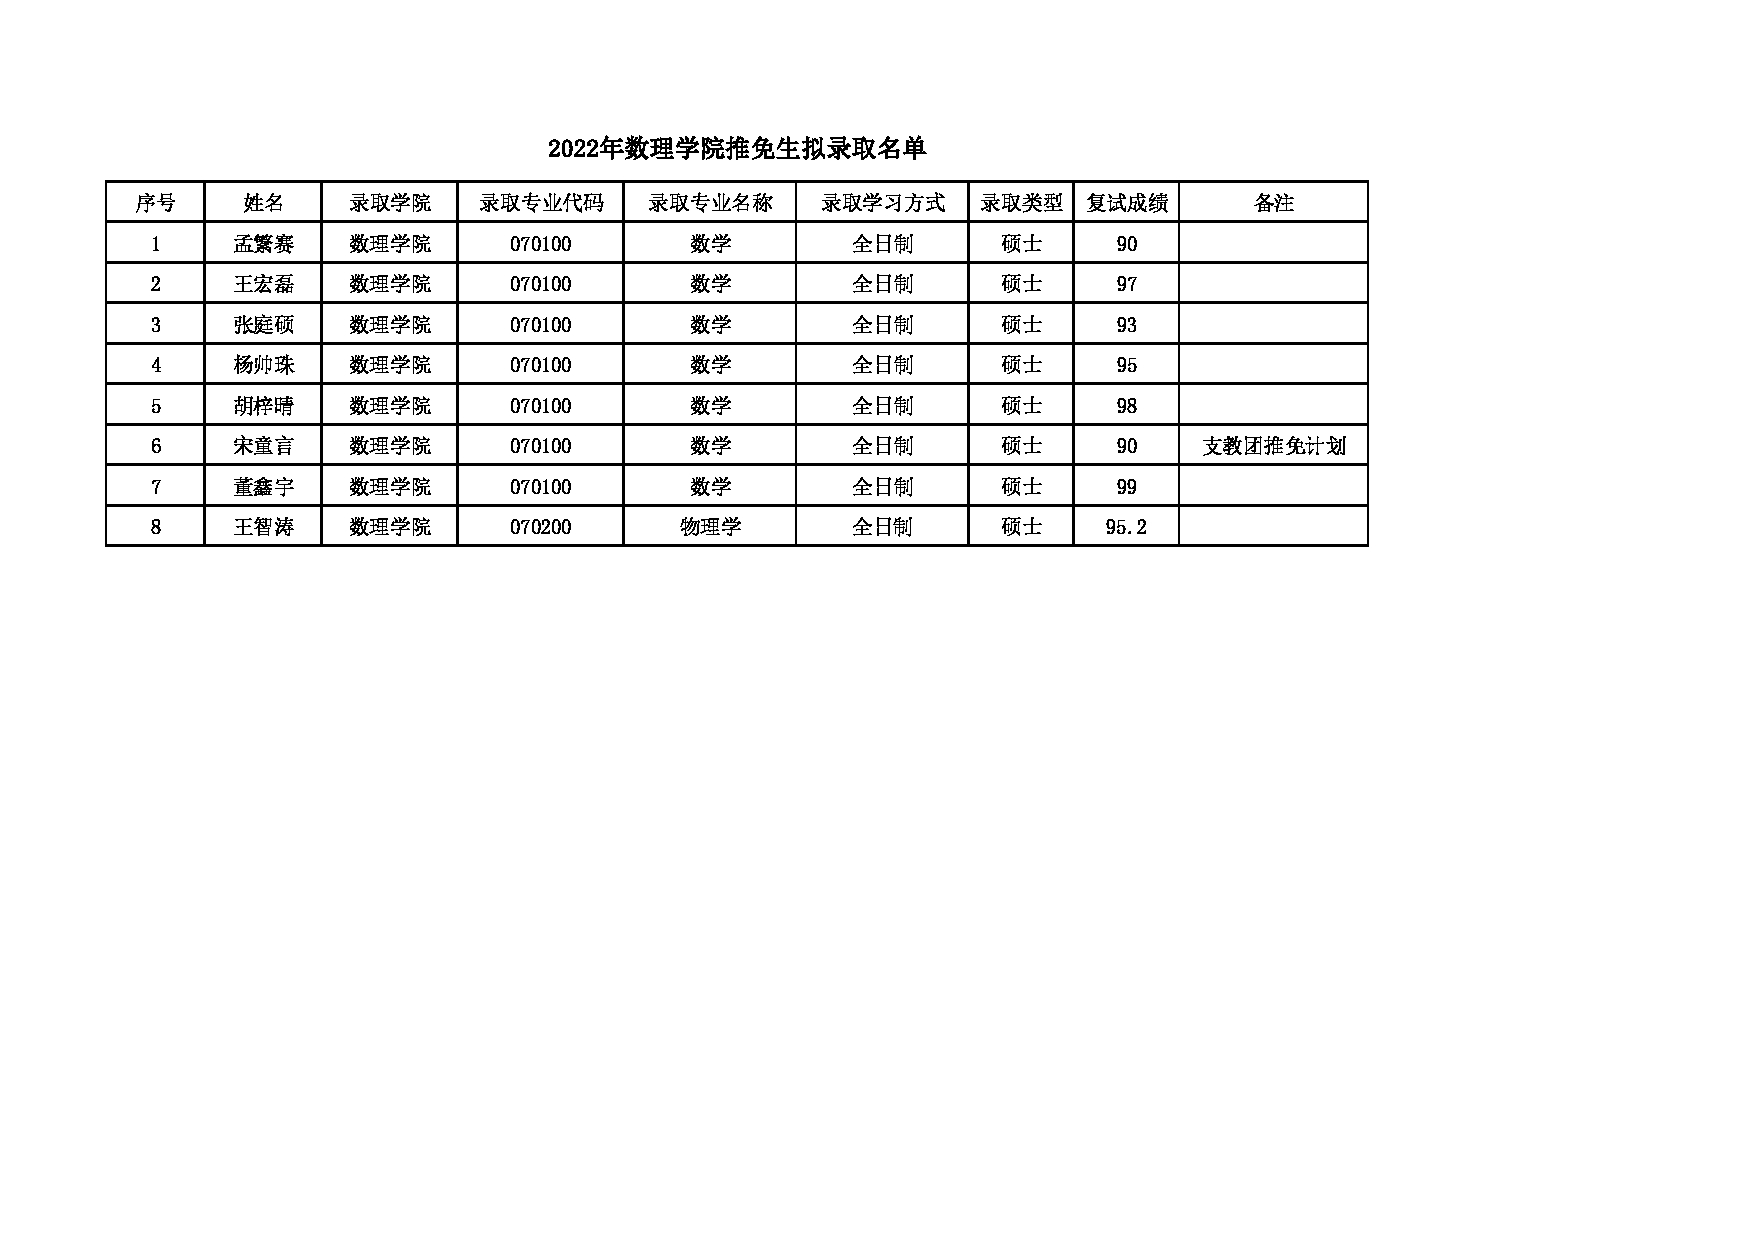 2022考研拟录取名单： 北京化工大学2022年数理学院推免生拟录取名单 第1页